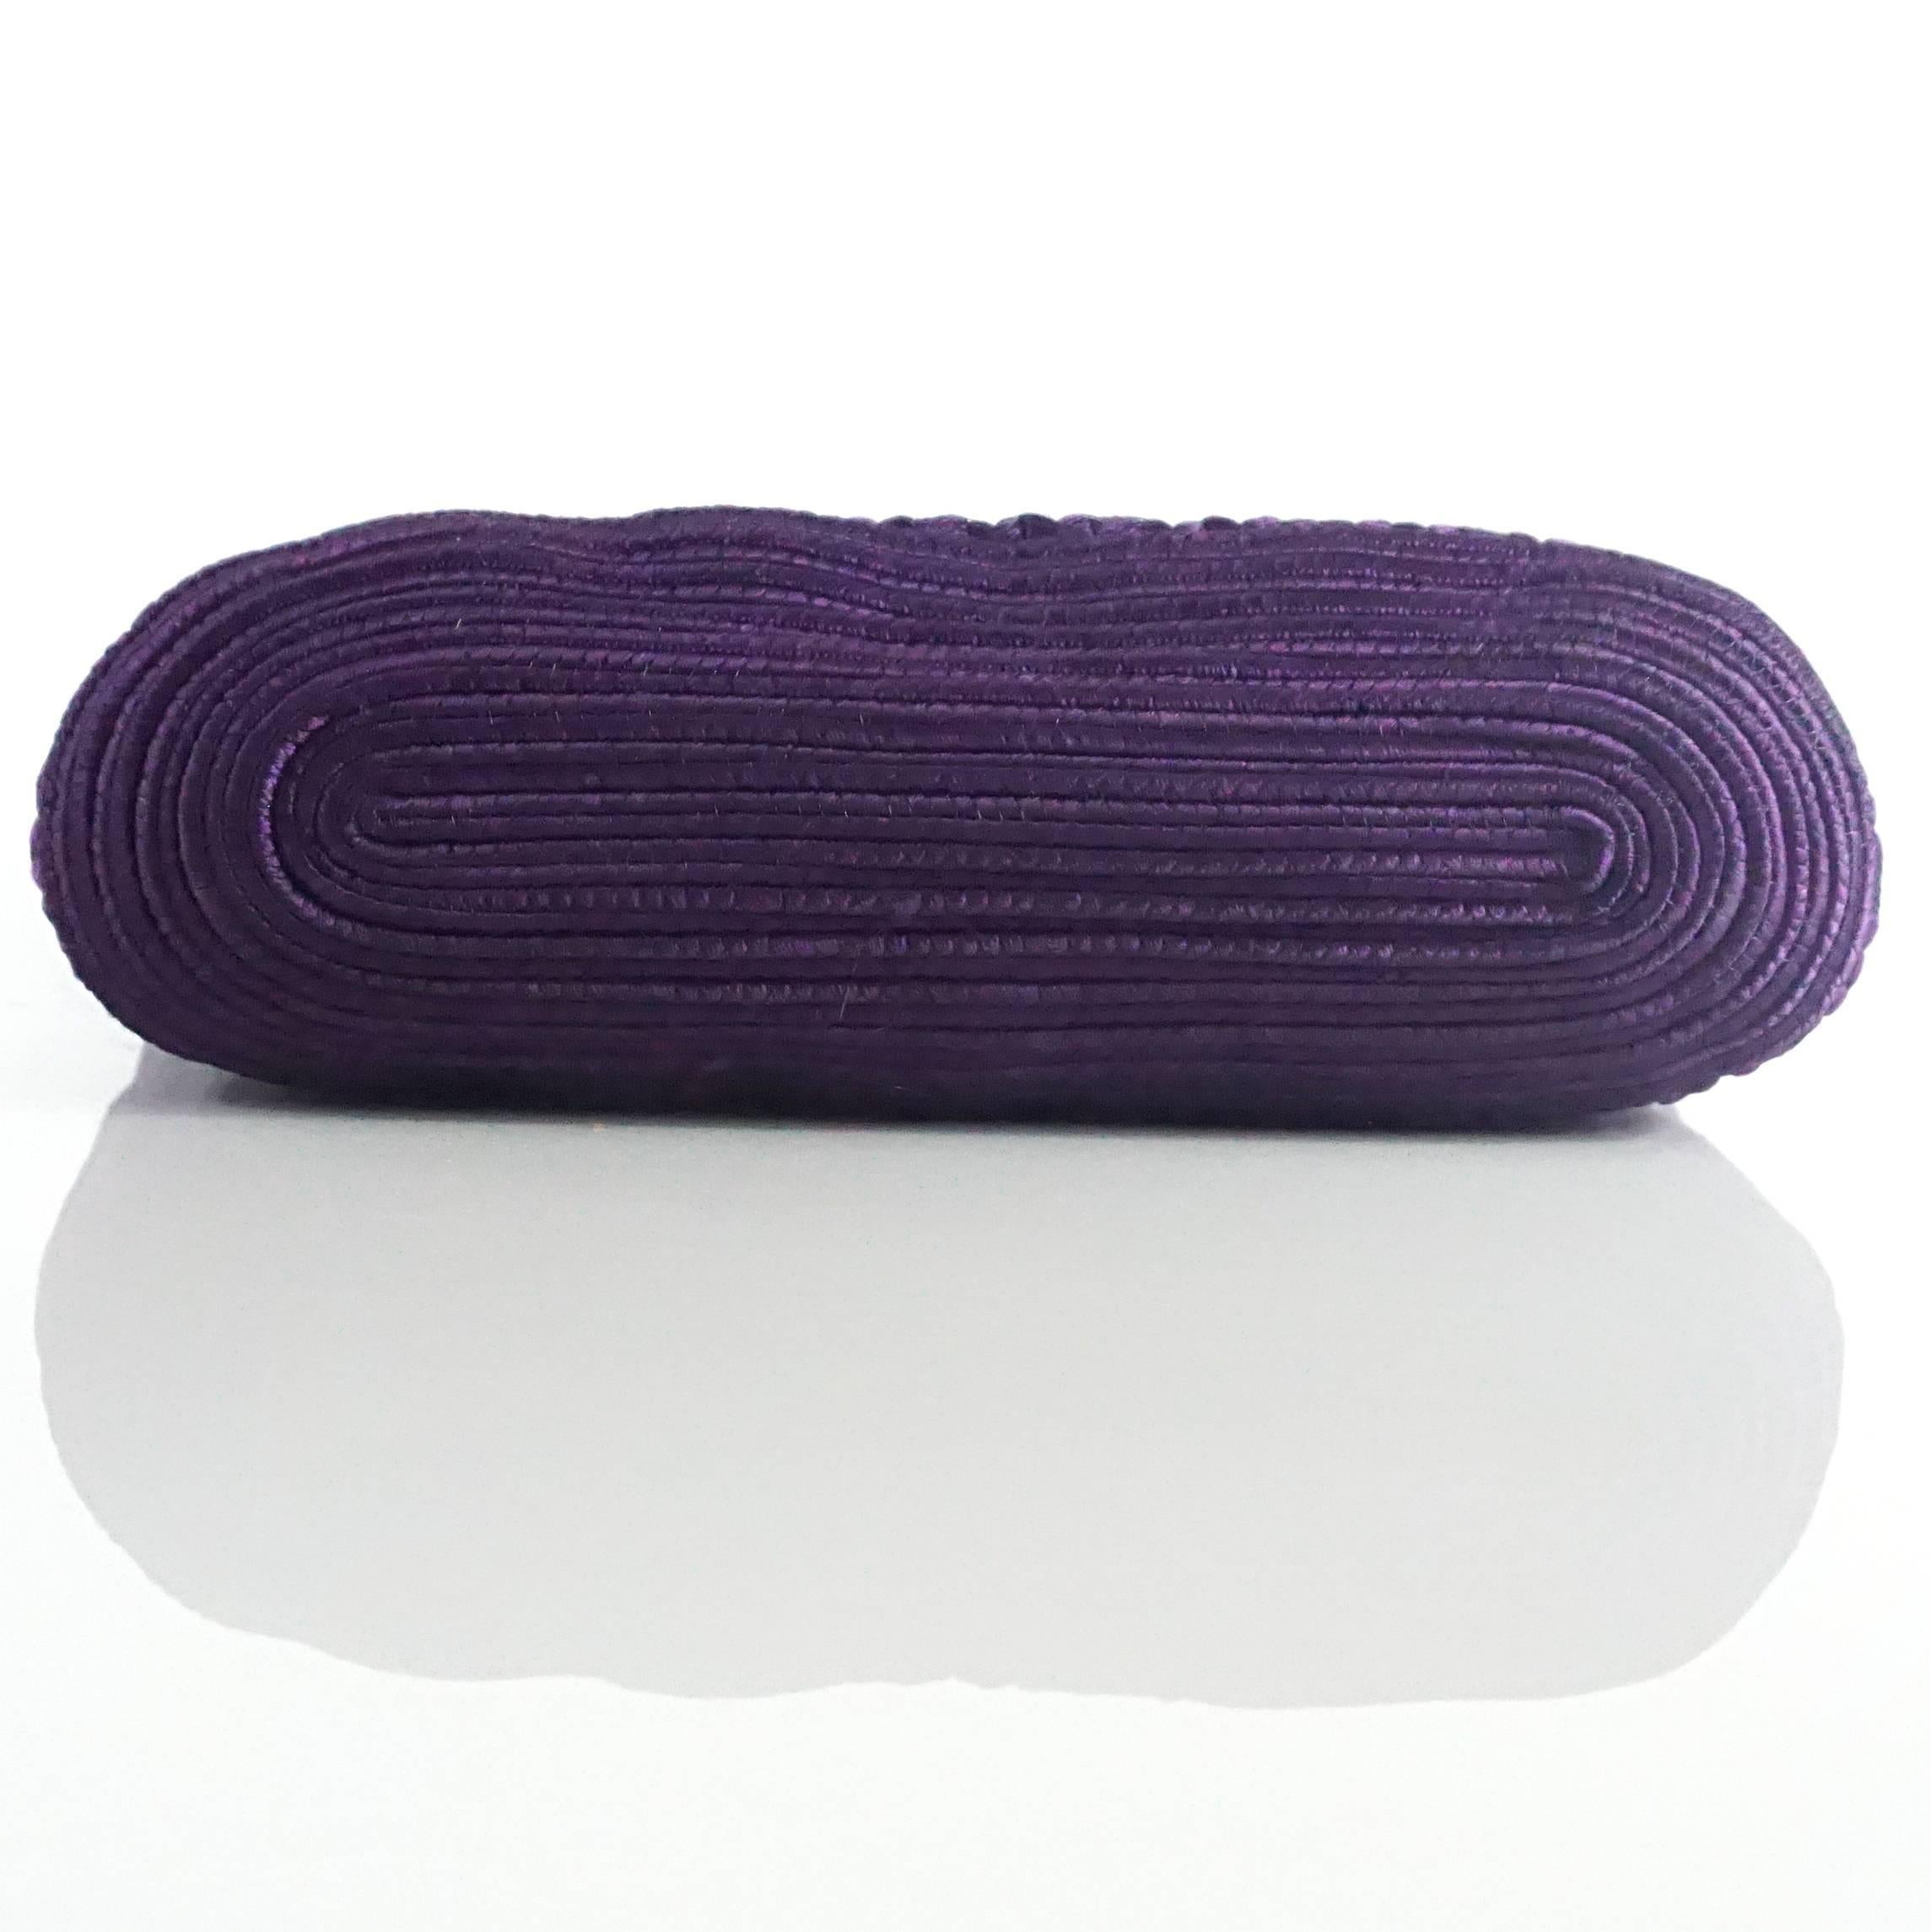 purple woven bag